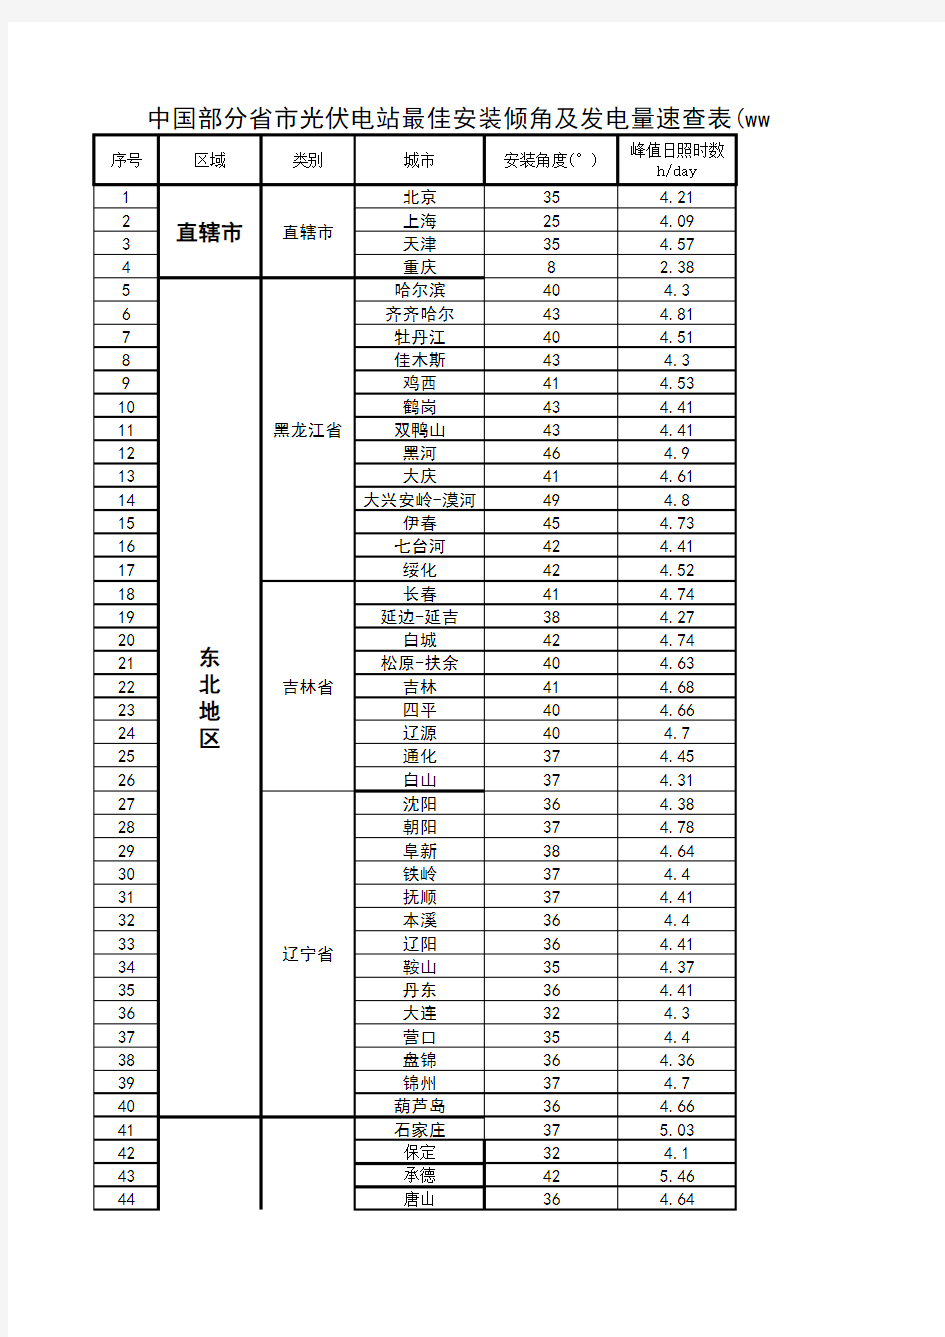 中国各省市光伏电站最佳安装倾角及发电量速查表